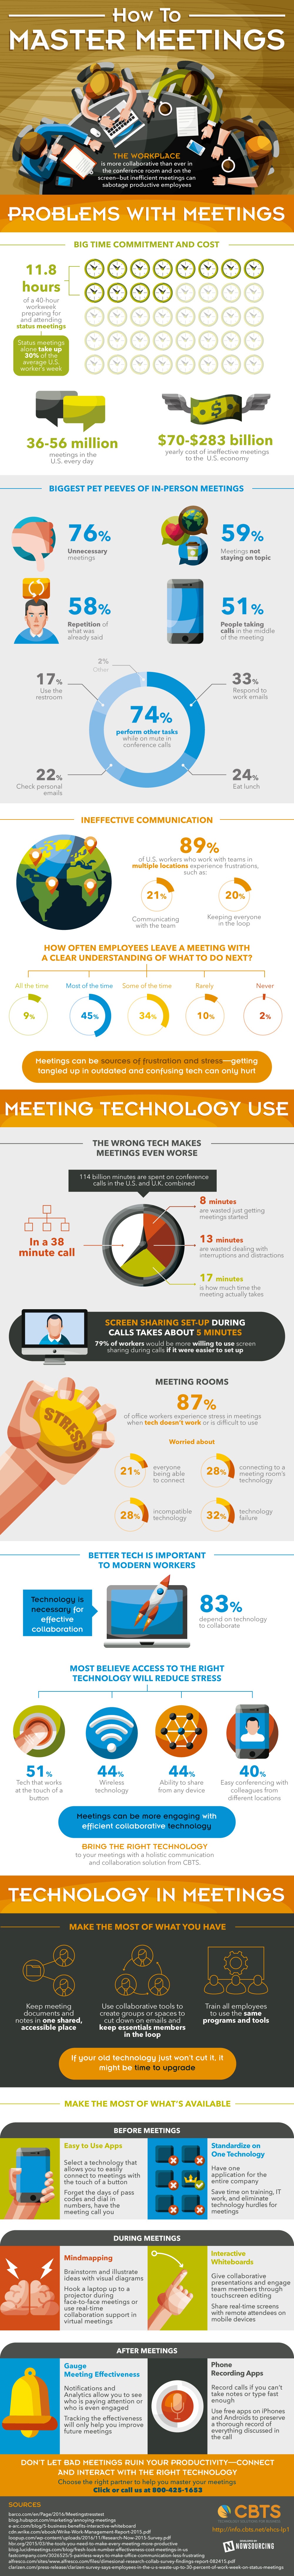 meetings infographic.jpg